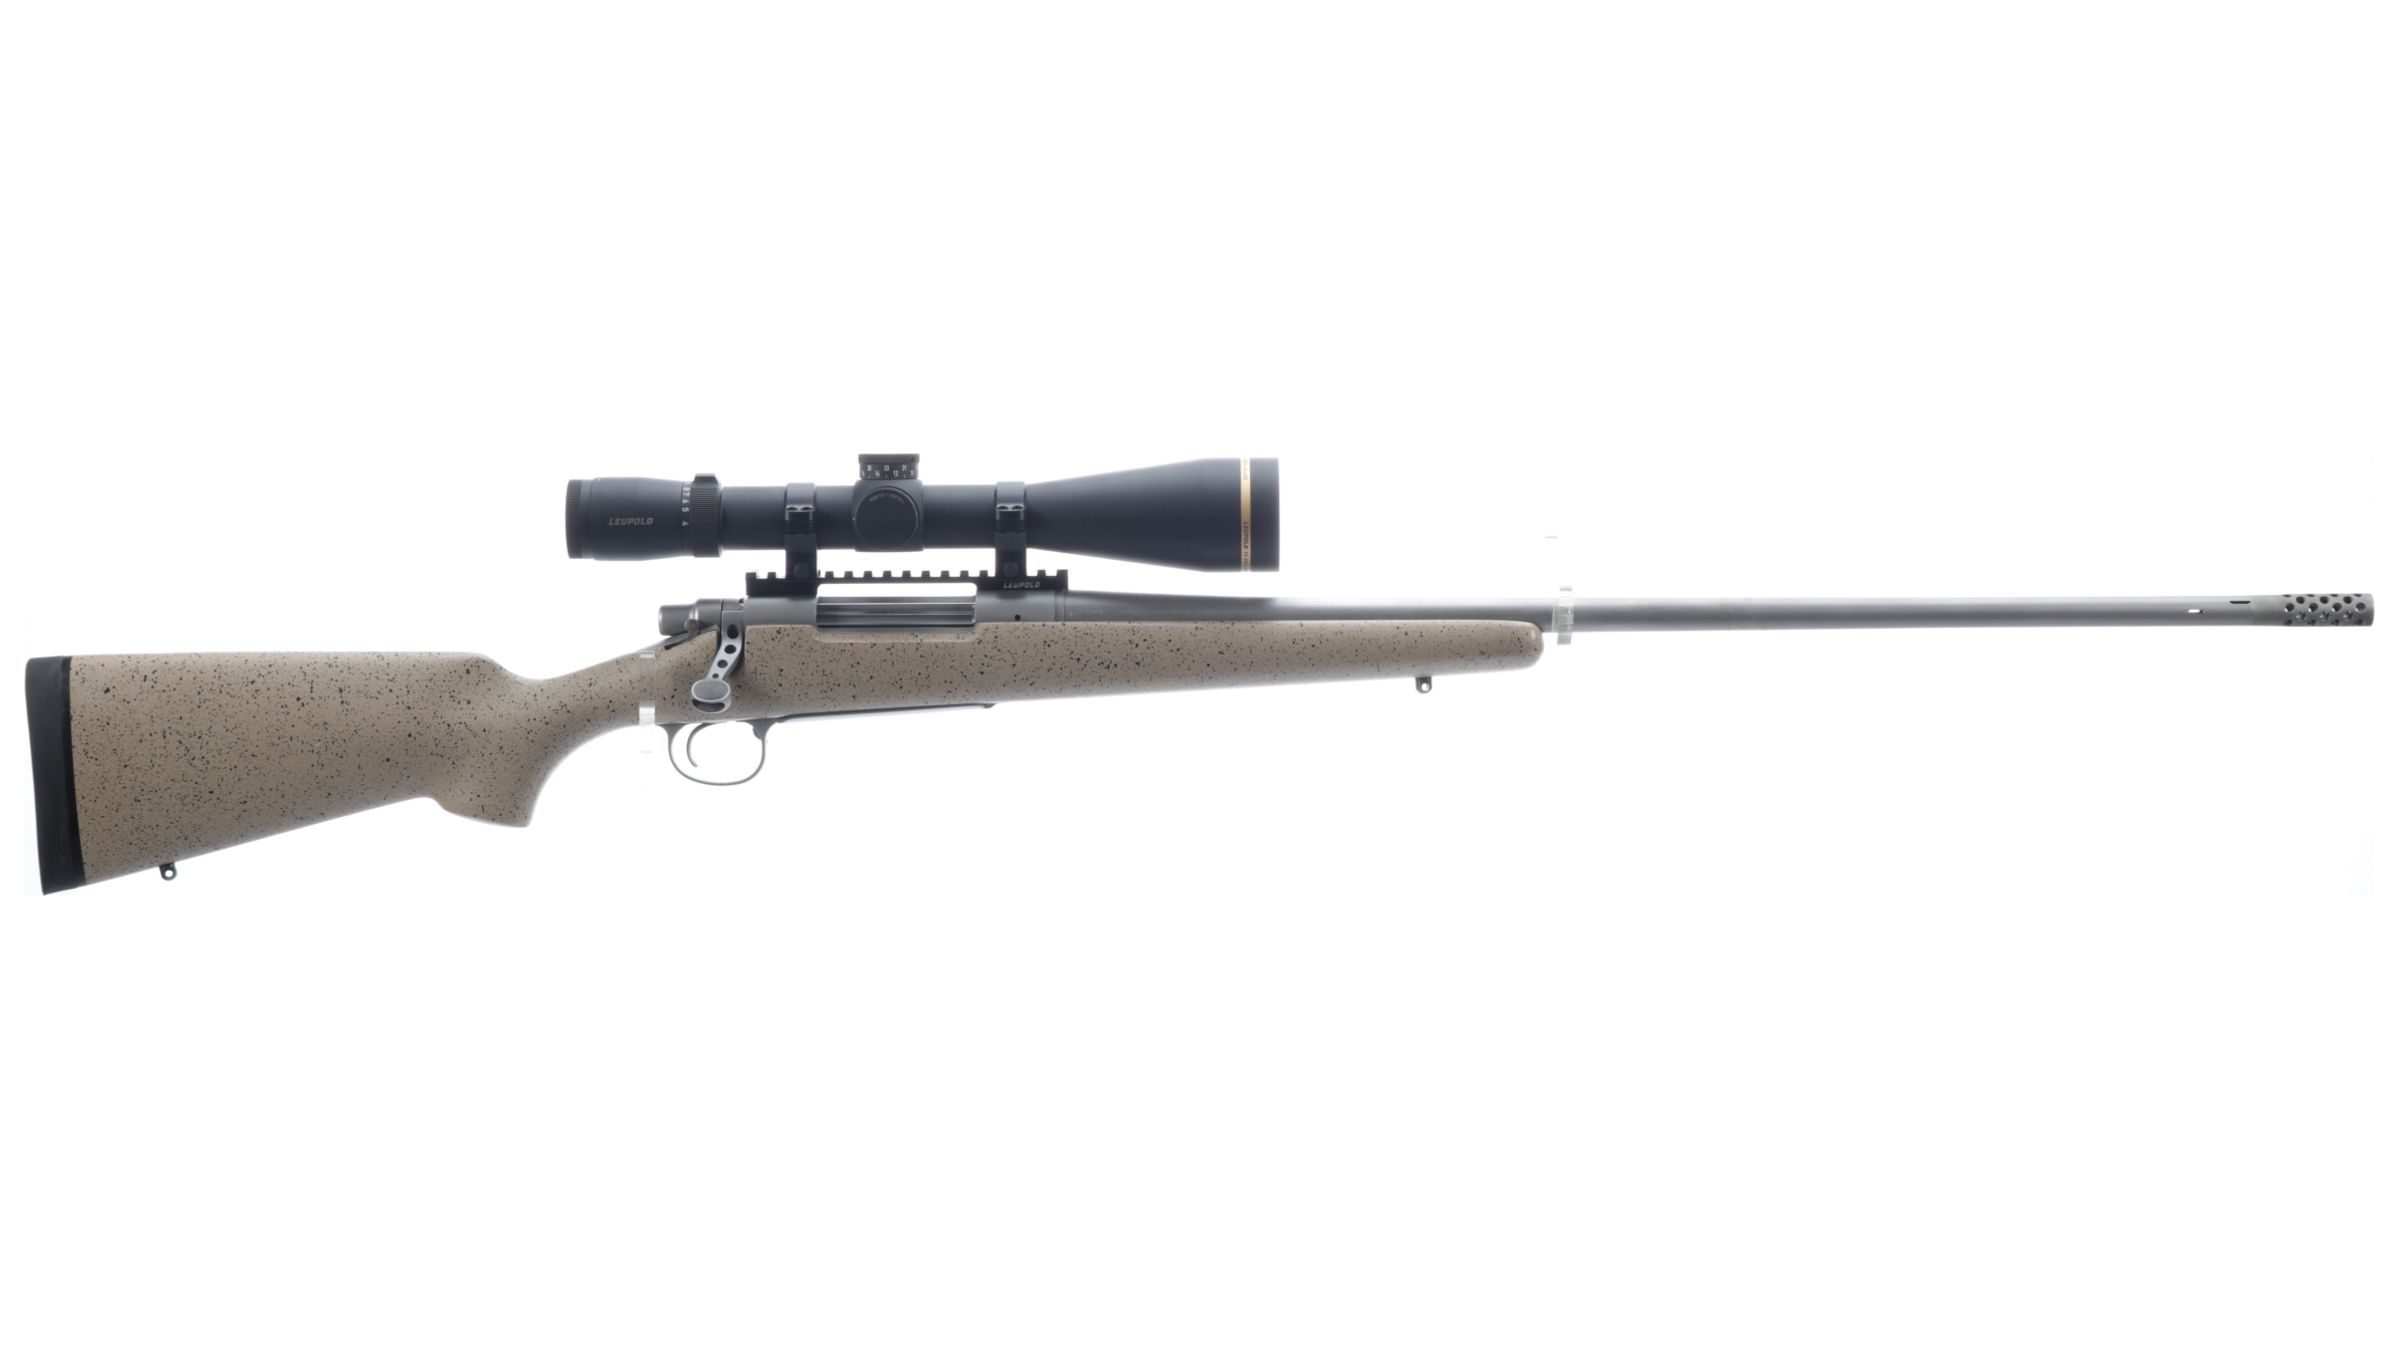 remington 338 lapua magnum rifle